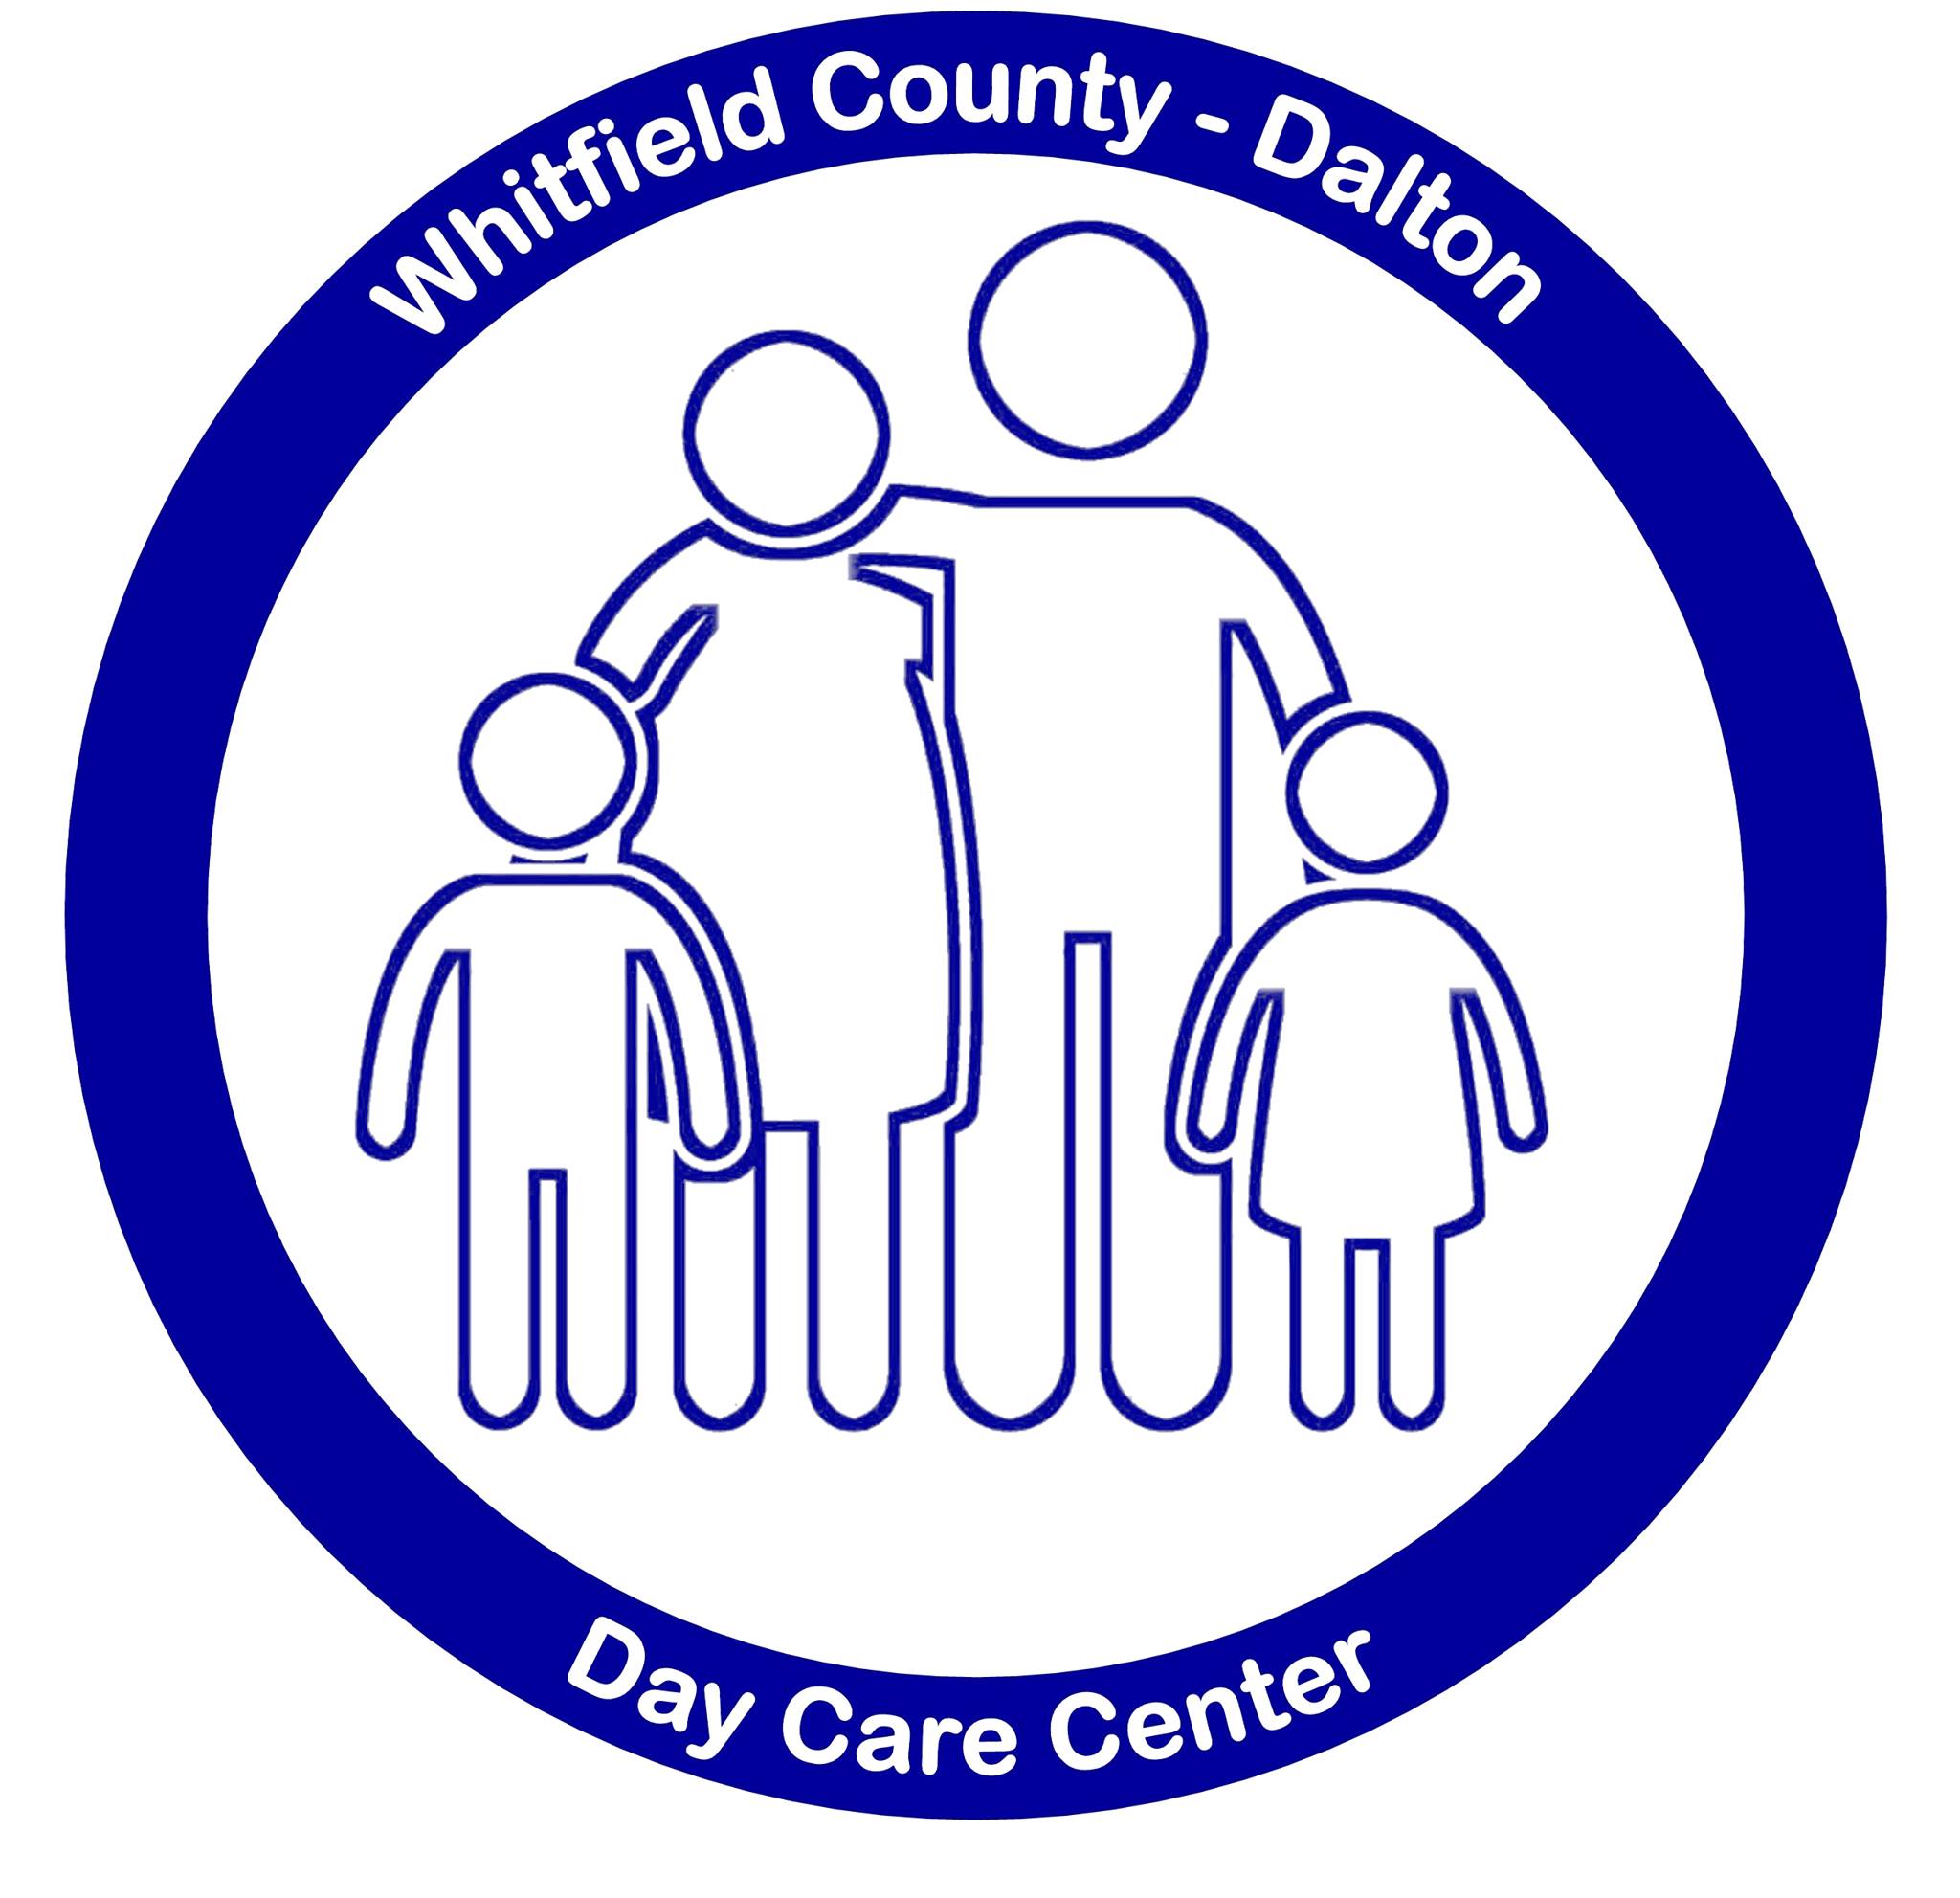 Whitfield County-Dalton Day Care Center image